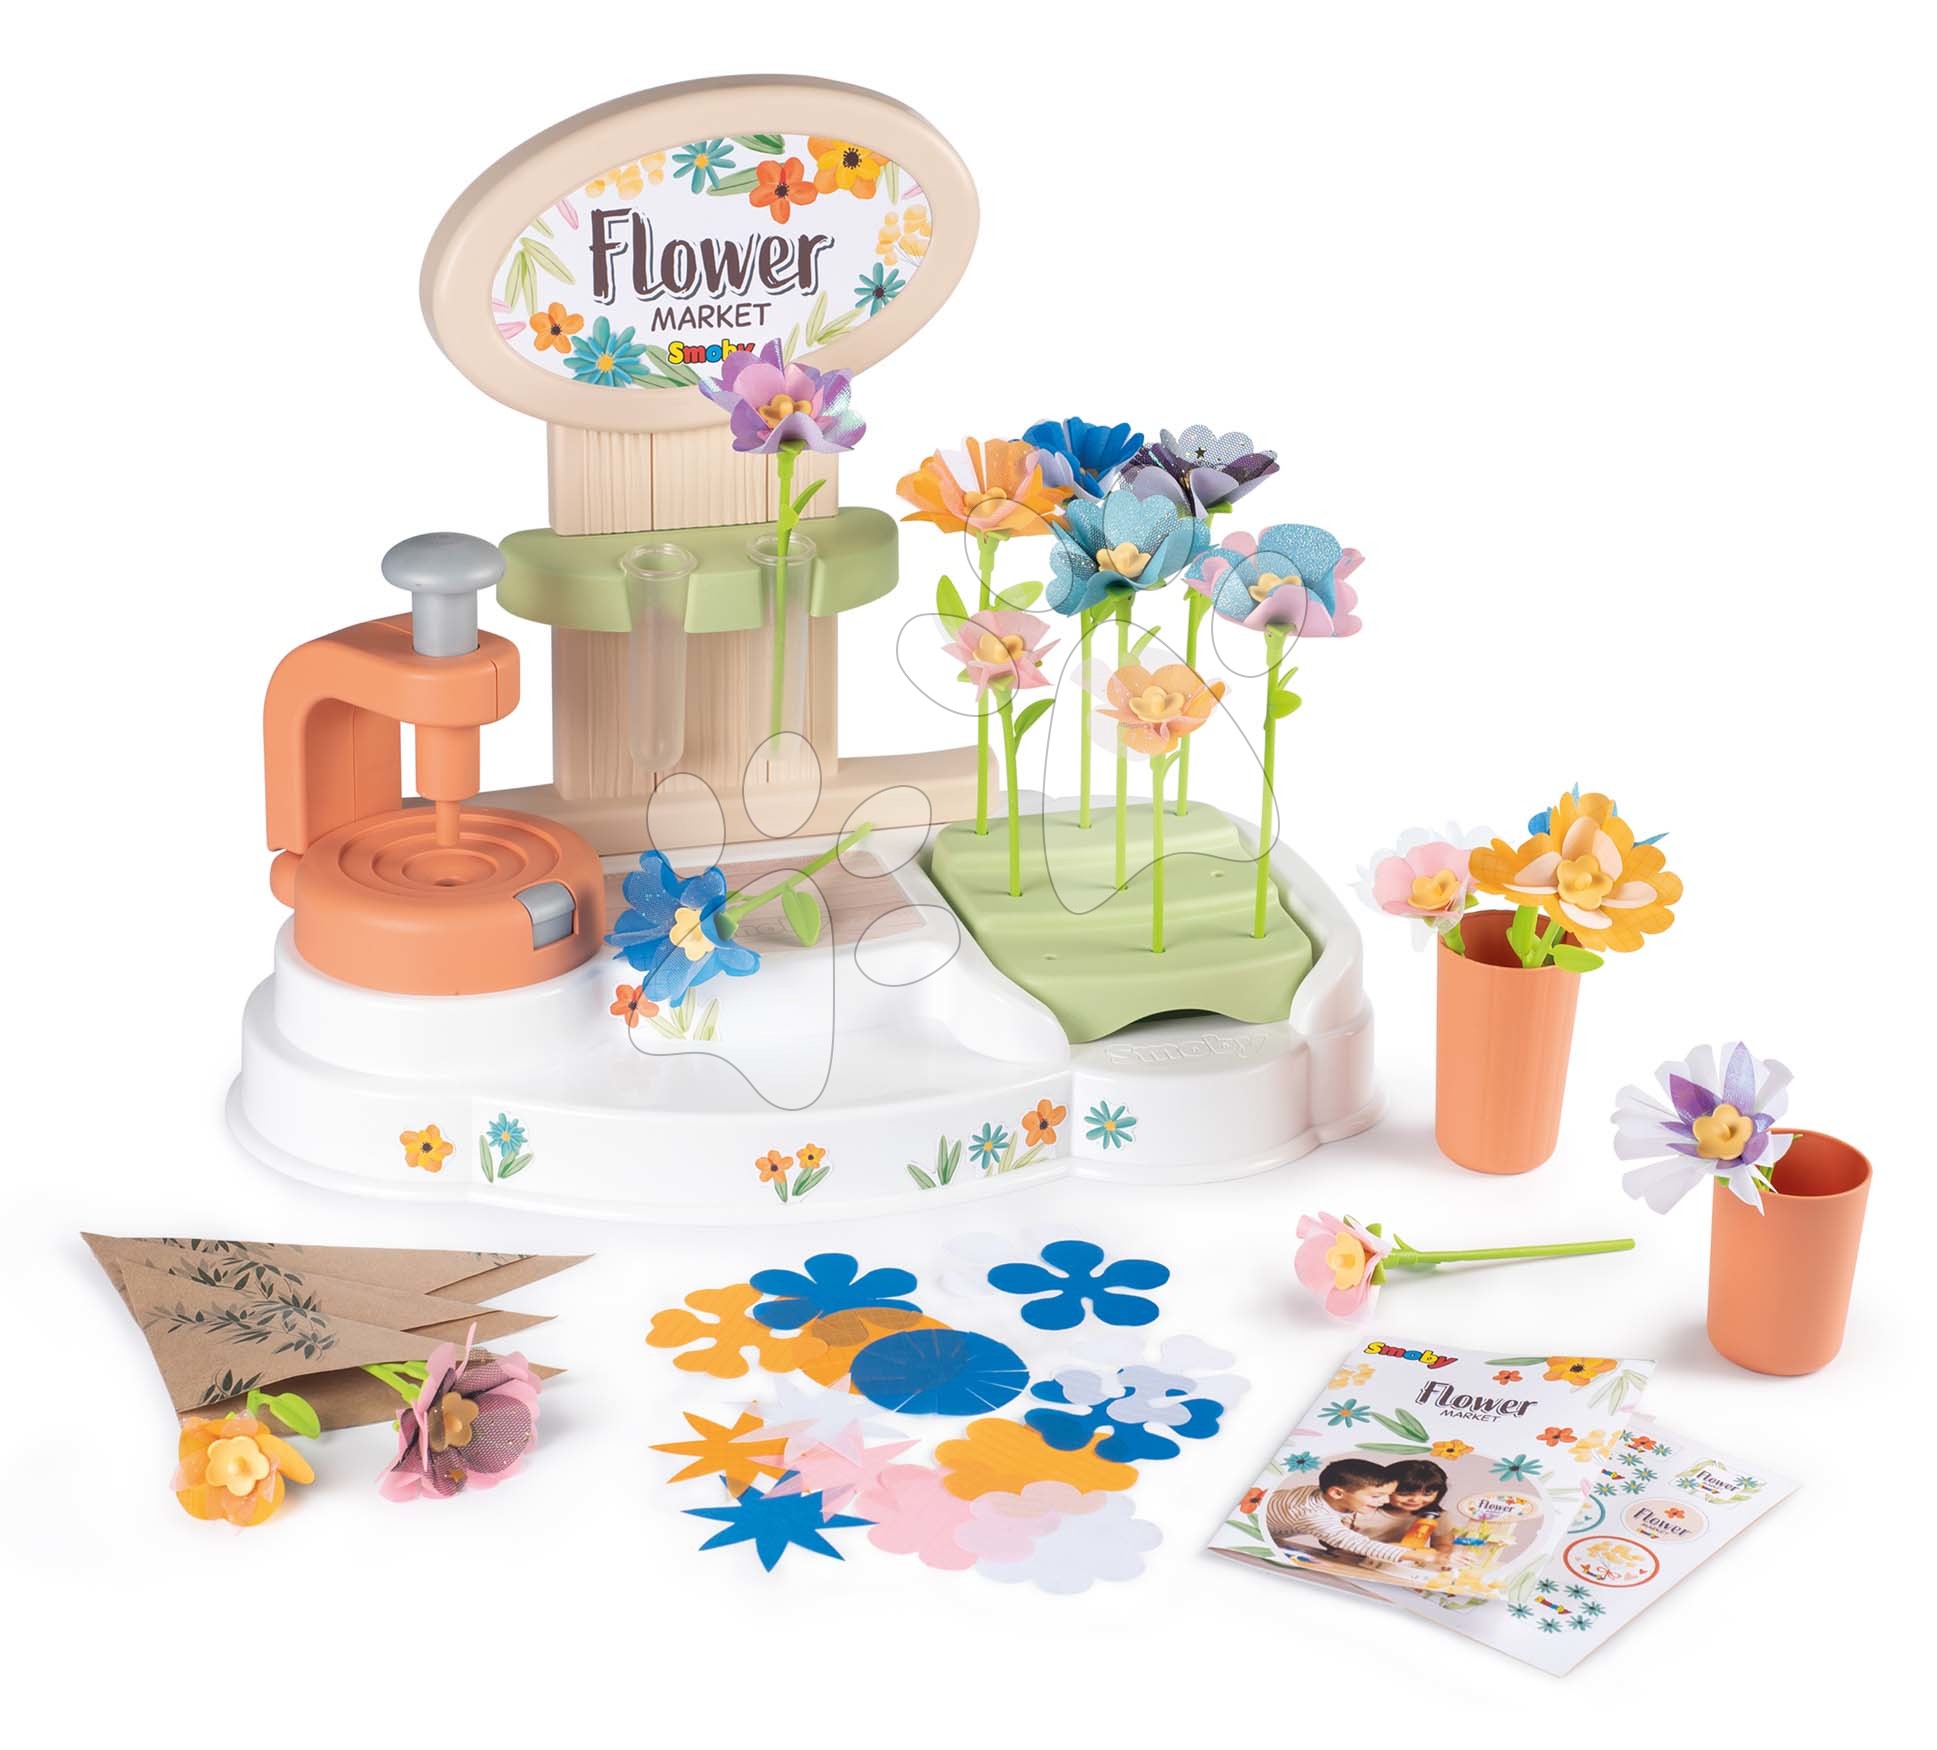 Obchody pre deti - Kvetinárstvo s vlastnou výrobou kvetov Flower Market Smoby z rôznych textilných lupienkov 104 doplnkov